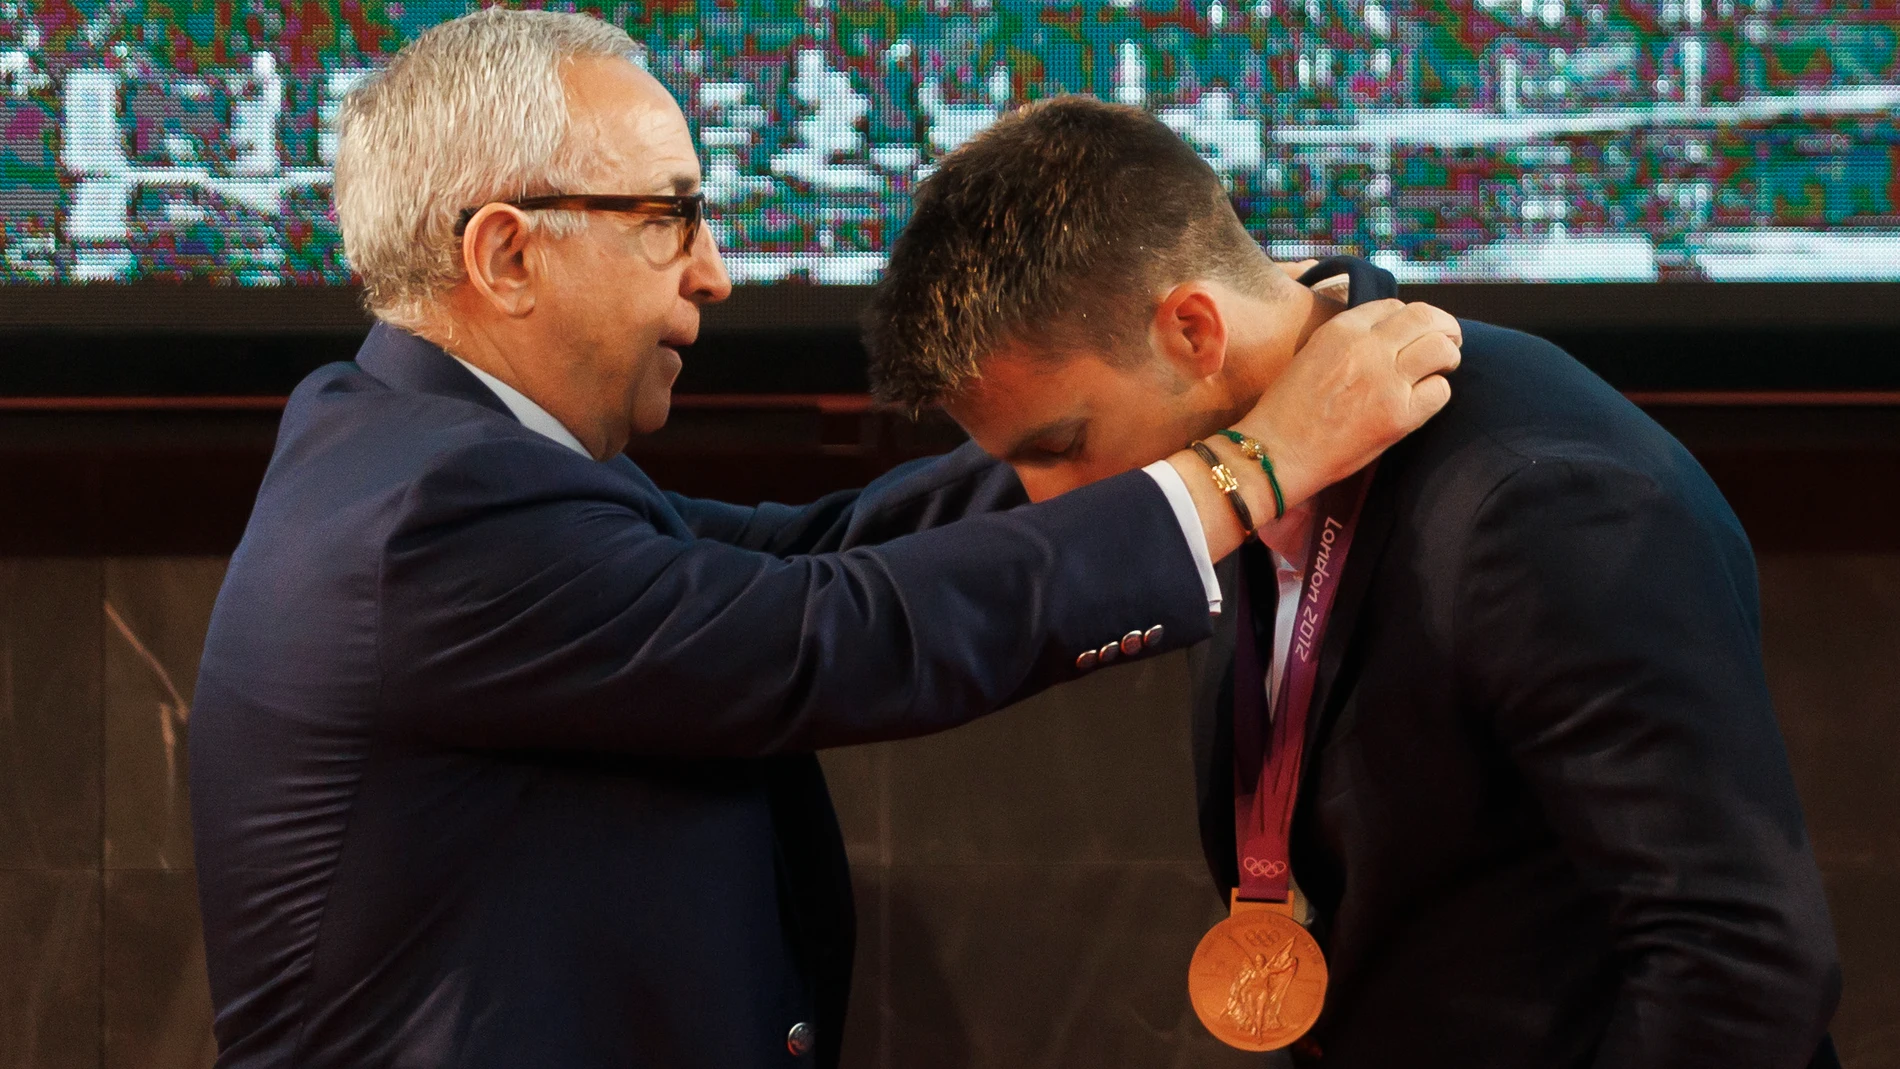 El piragüista Sete Benavides recibe por el presidente del COE, Alejandro Blanco, la medalla de bronce de la prueba C1 200 metros de los Juegos Olímpicos de Londres 2012